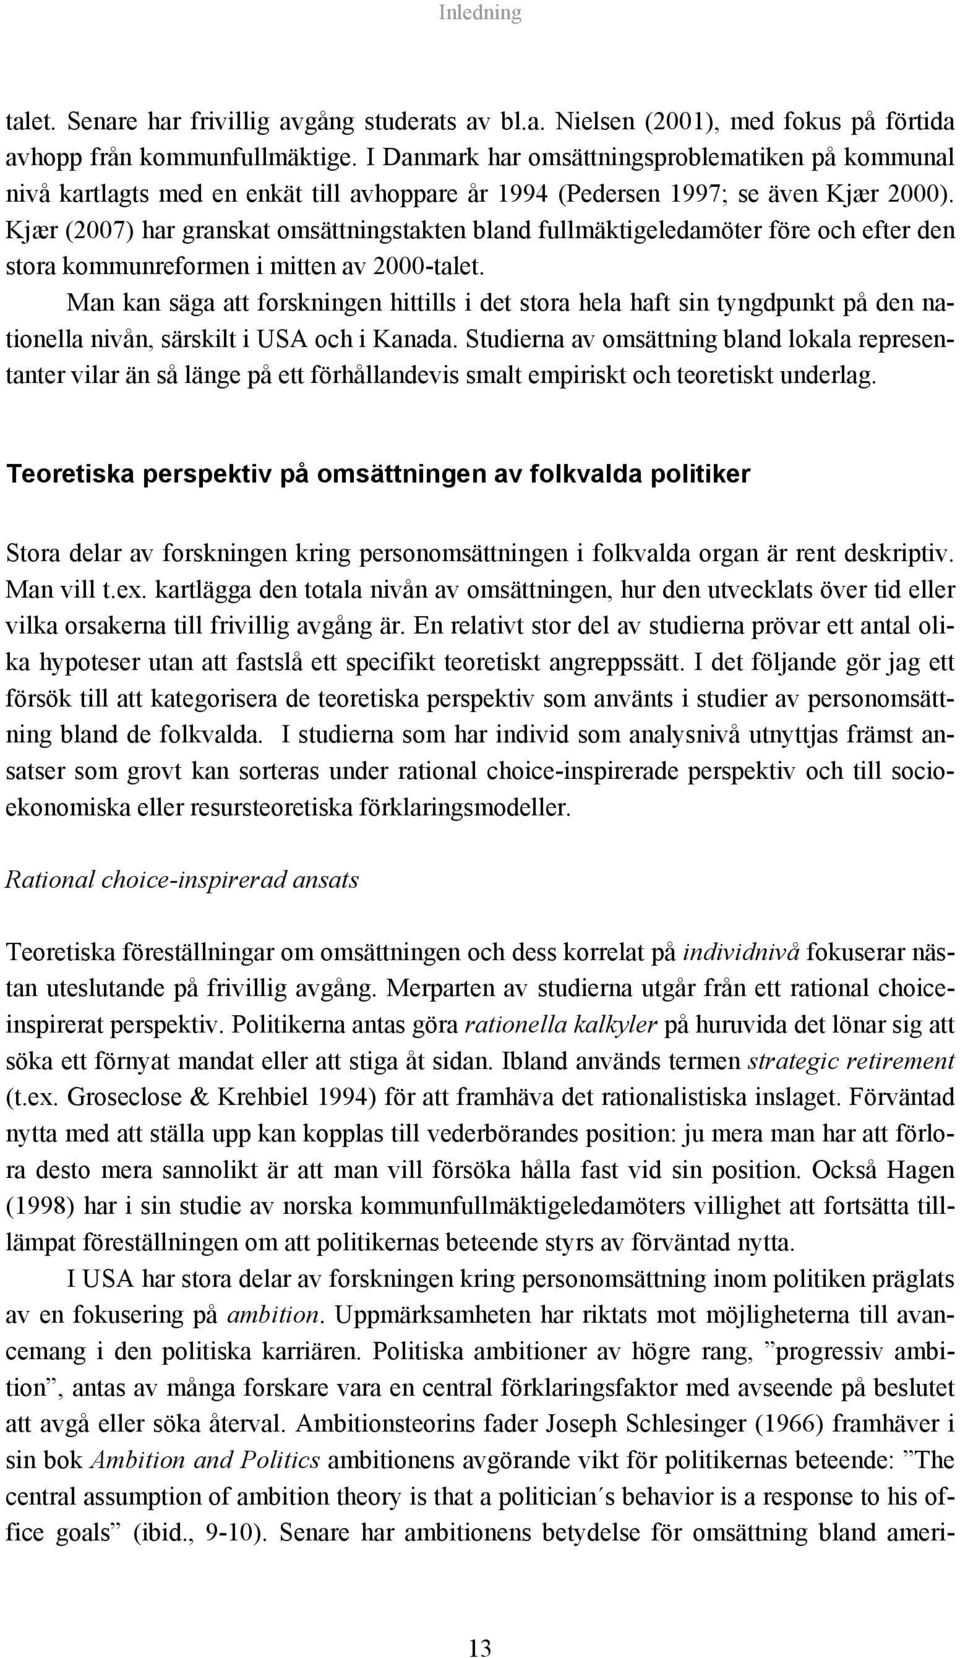 Kjær (2007) har granskat omsättningstakten bland fullmäktigeledamöter före och efter den stora kommunreformen i mitten av 2000-talet.